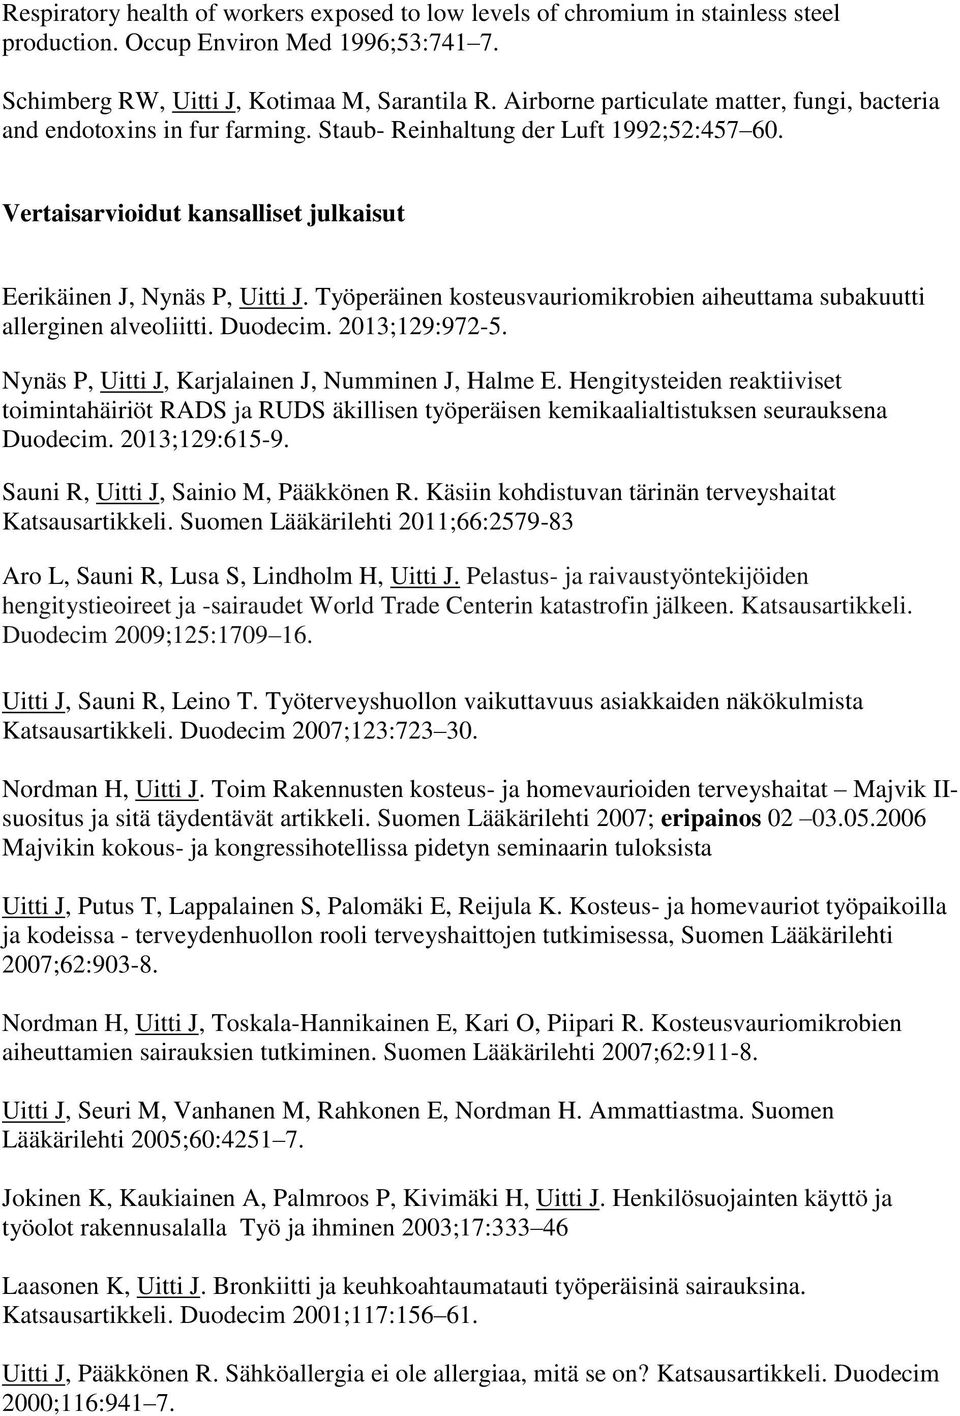 Työperäinen kosteusvauriomikrobien aiheuttama subakuutti allerginen alveoliitti. Duodecim. 2013;129:972-5. Nynäs P, Uitti J, Karjalainen J, Numminen J, Halme E.